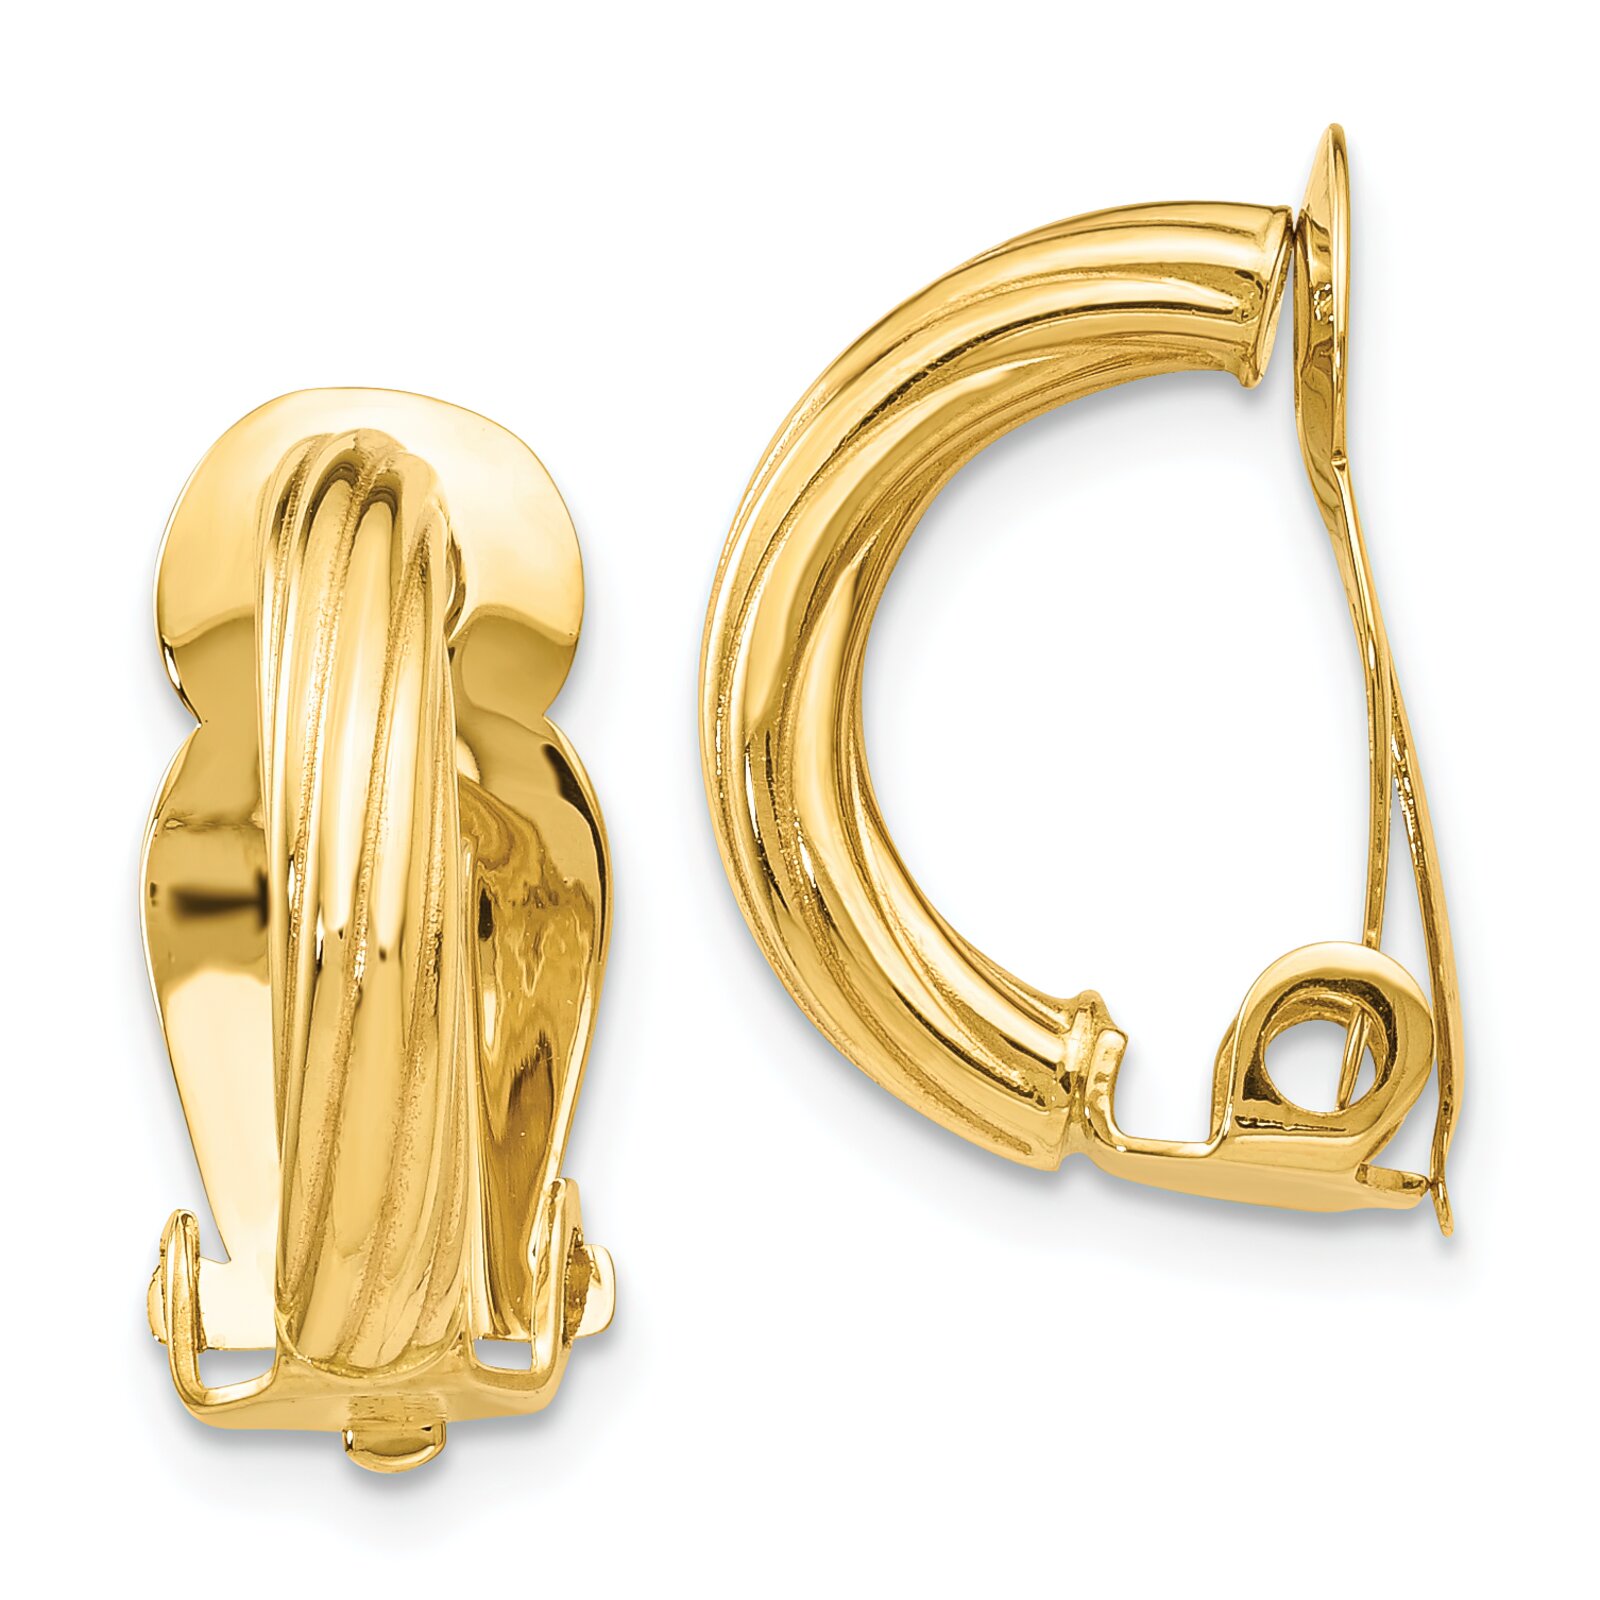 Findingking 14K Gold Clip On Twisted Hoop Earrings Ear Jewelry